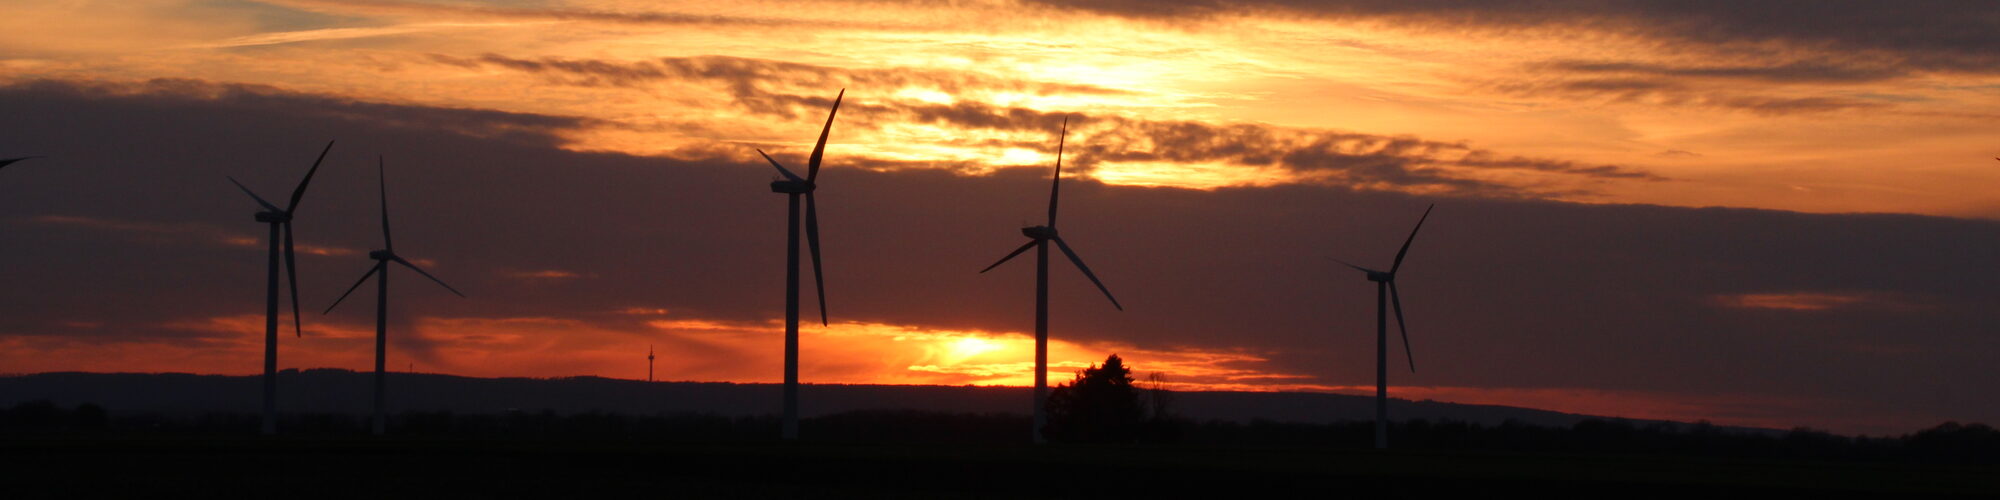 Windräder im Sonnenuntergang bei Erftstadt-Erp